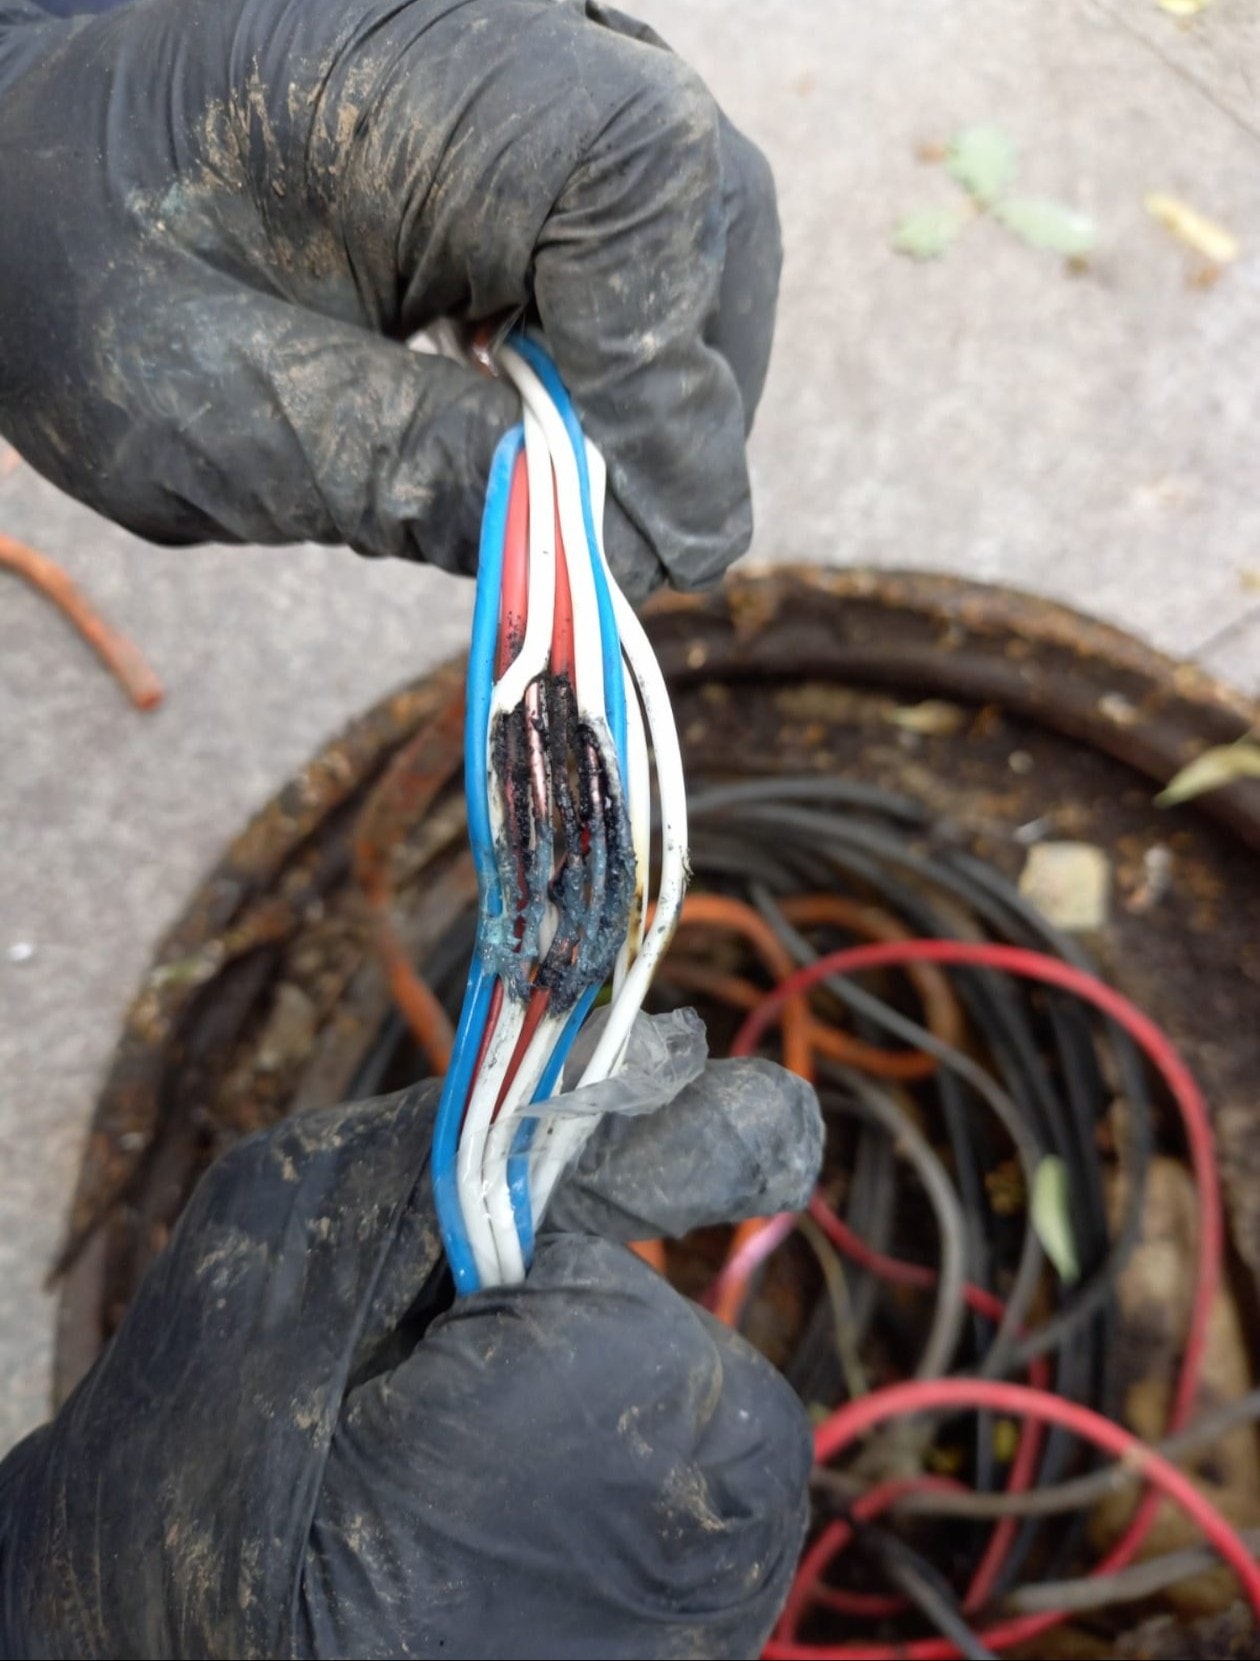 Semafoare defecte într-o intersecție din București, după ce cablurile au fost roase de șobolani